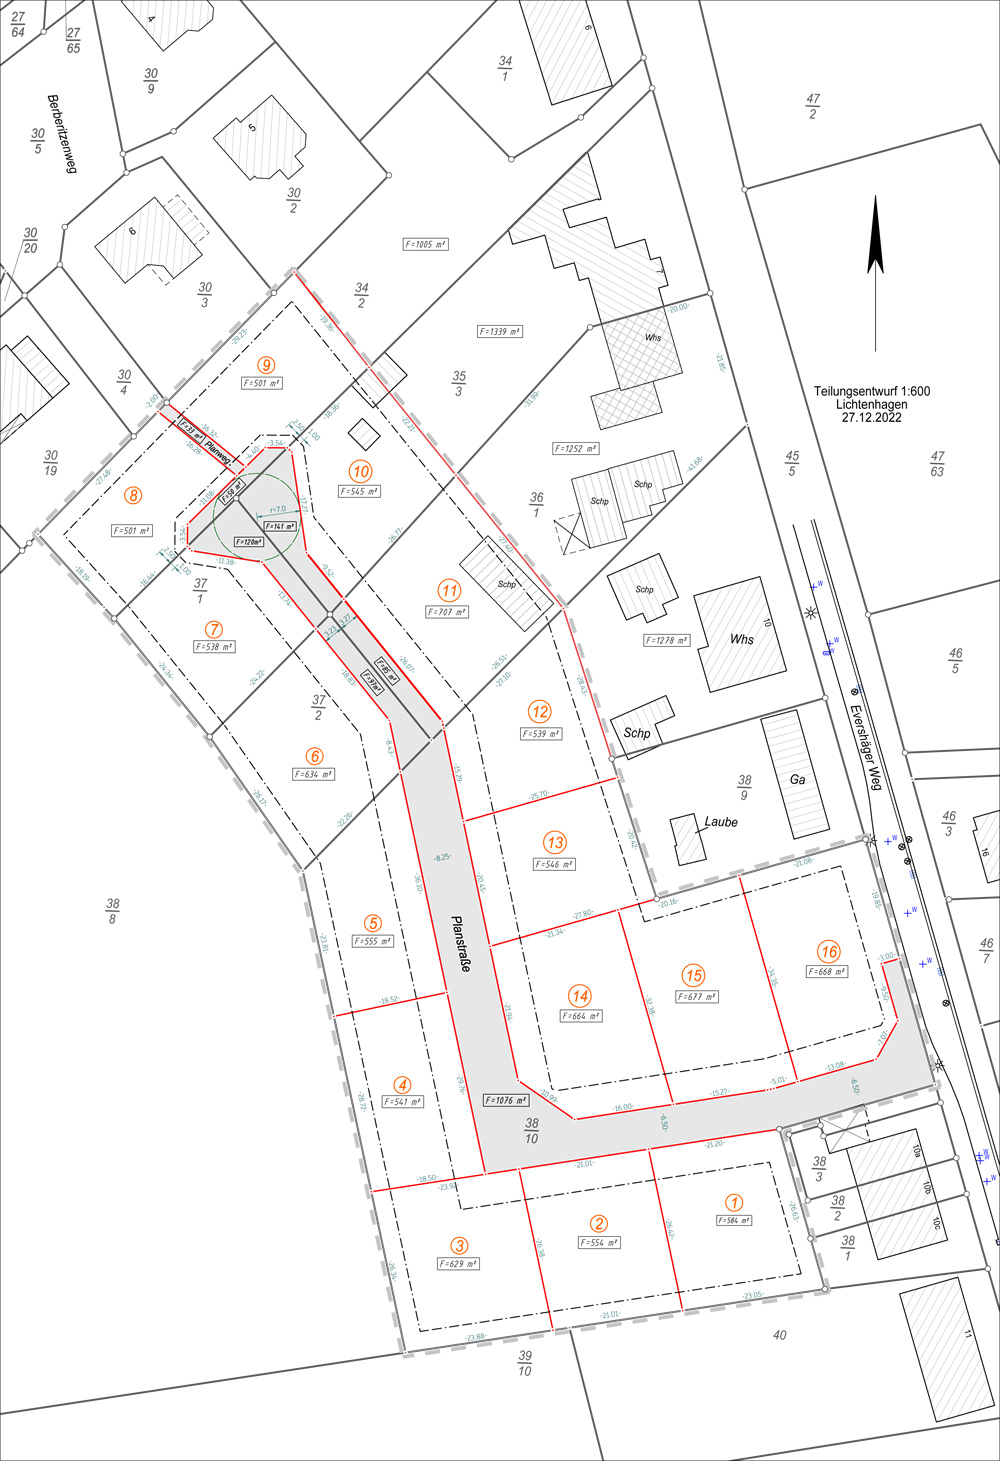 Lichtenhagen image map